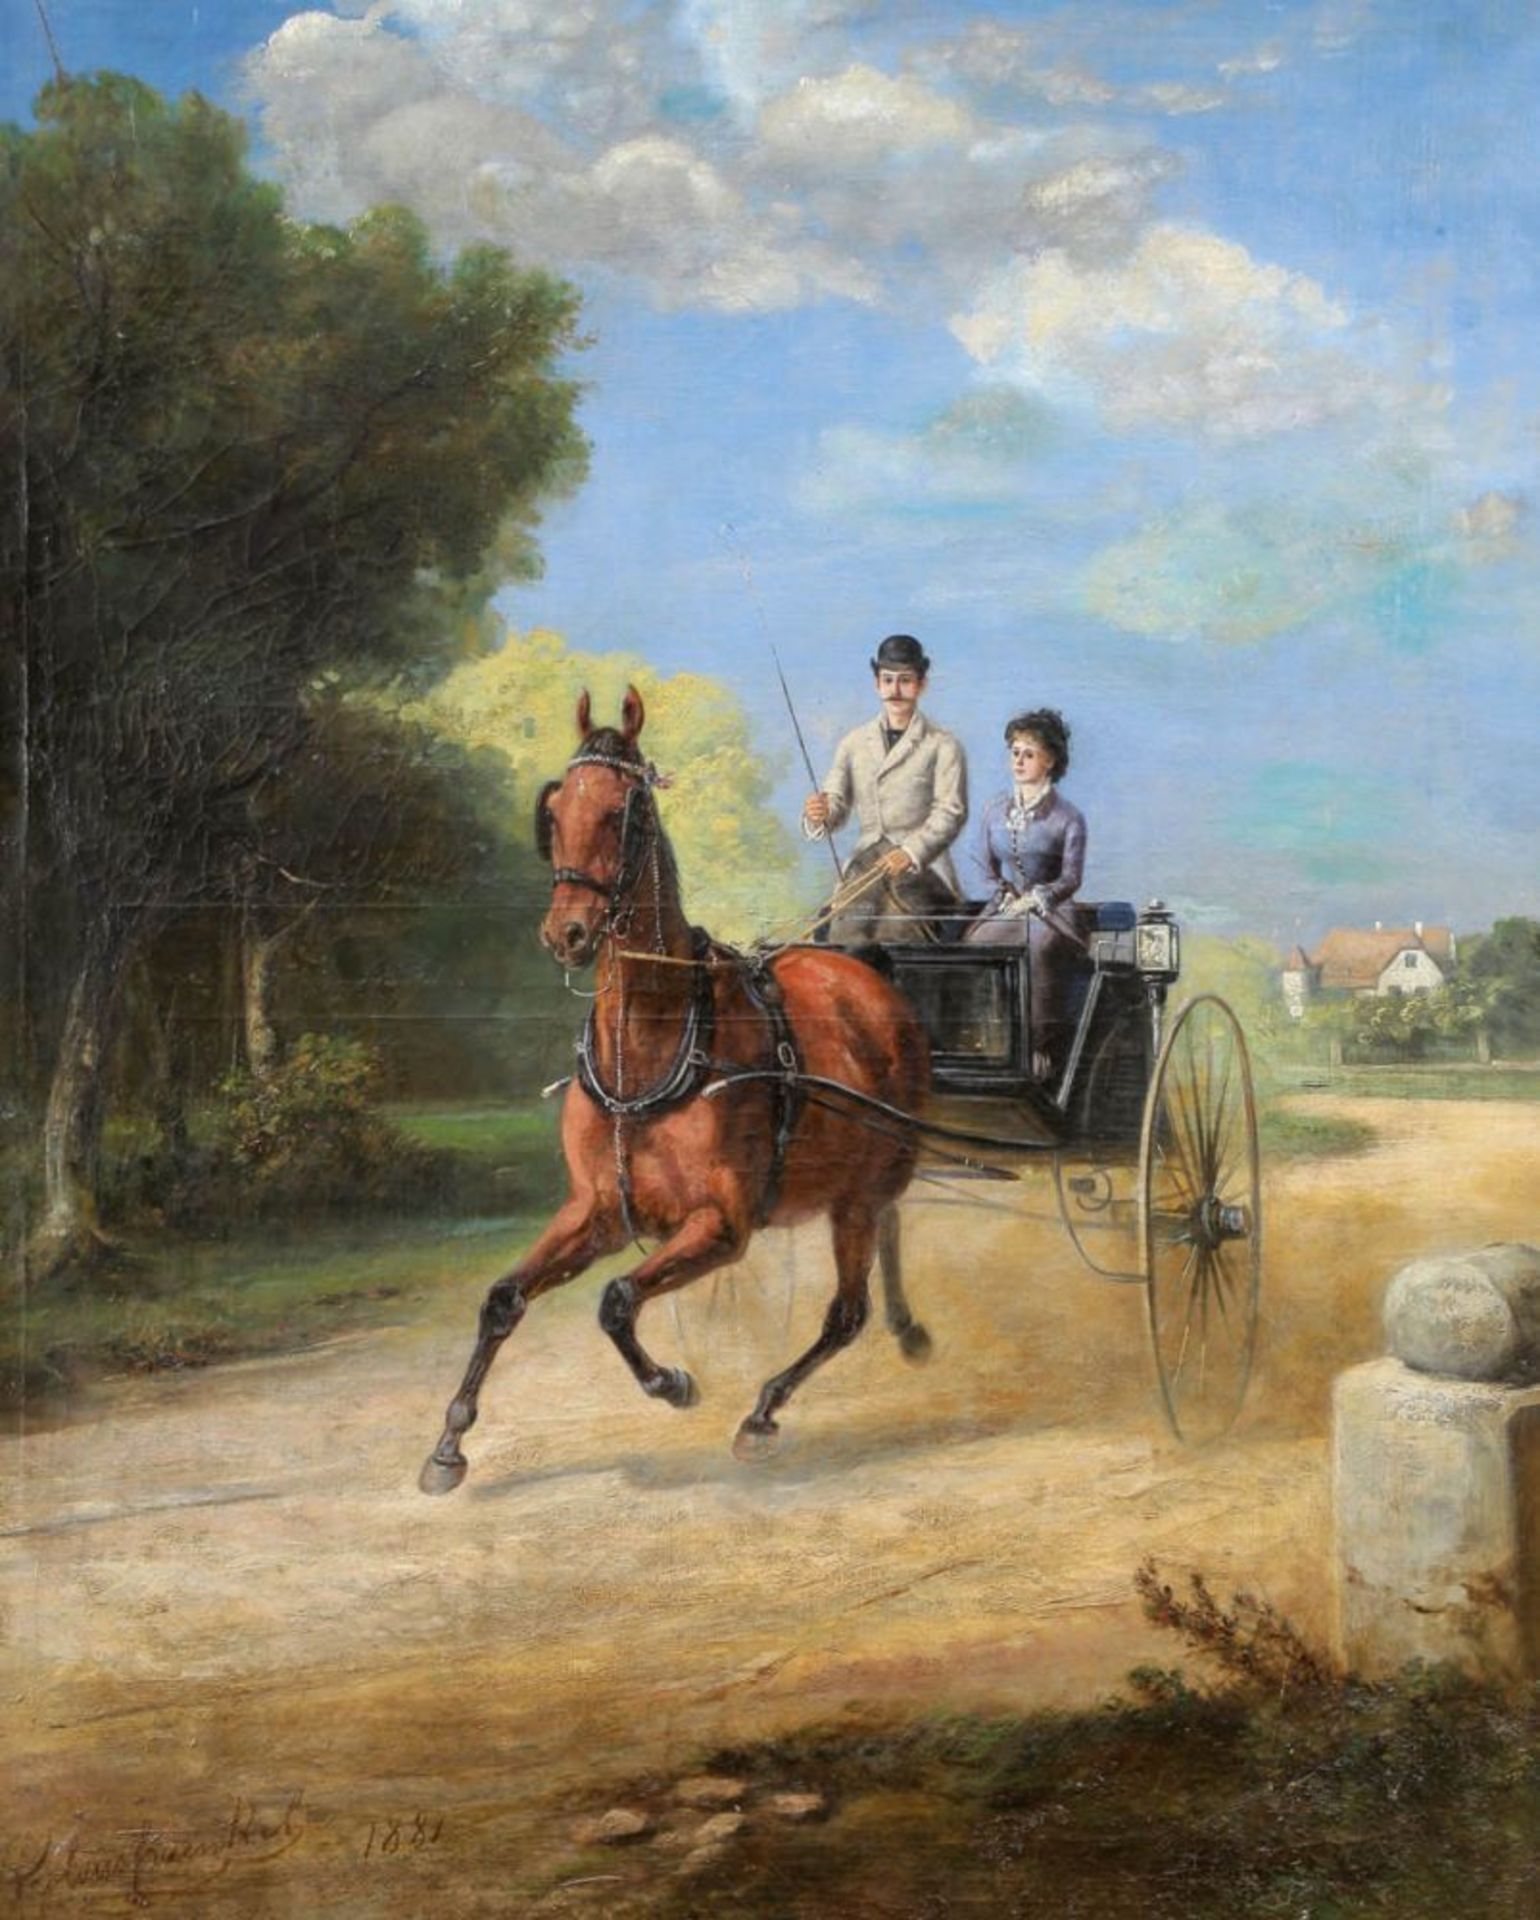 Künstler des 19. Jahrhunderts - Kutschfahrt - Öl/Lwd. Doubl. 100,5 x 80,5 cm. Undeutl. sign. und